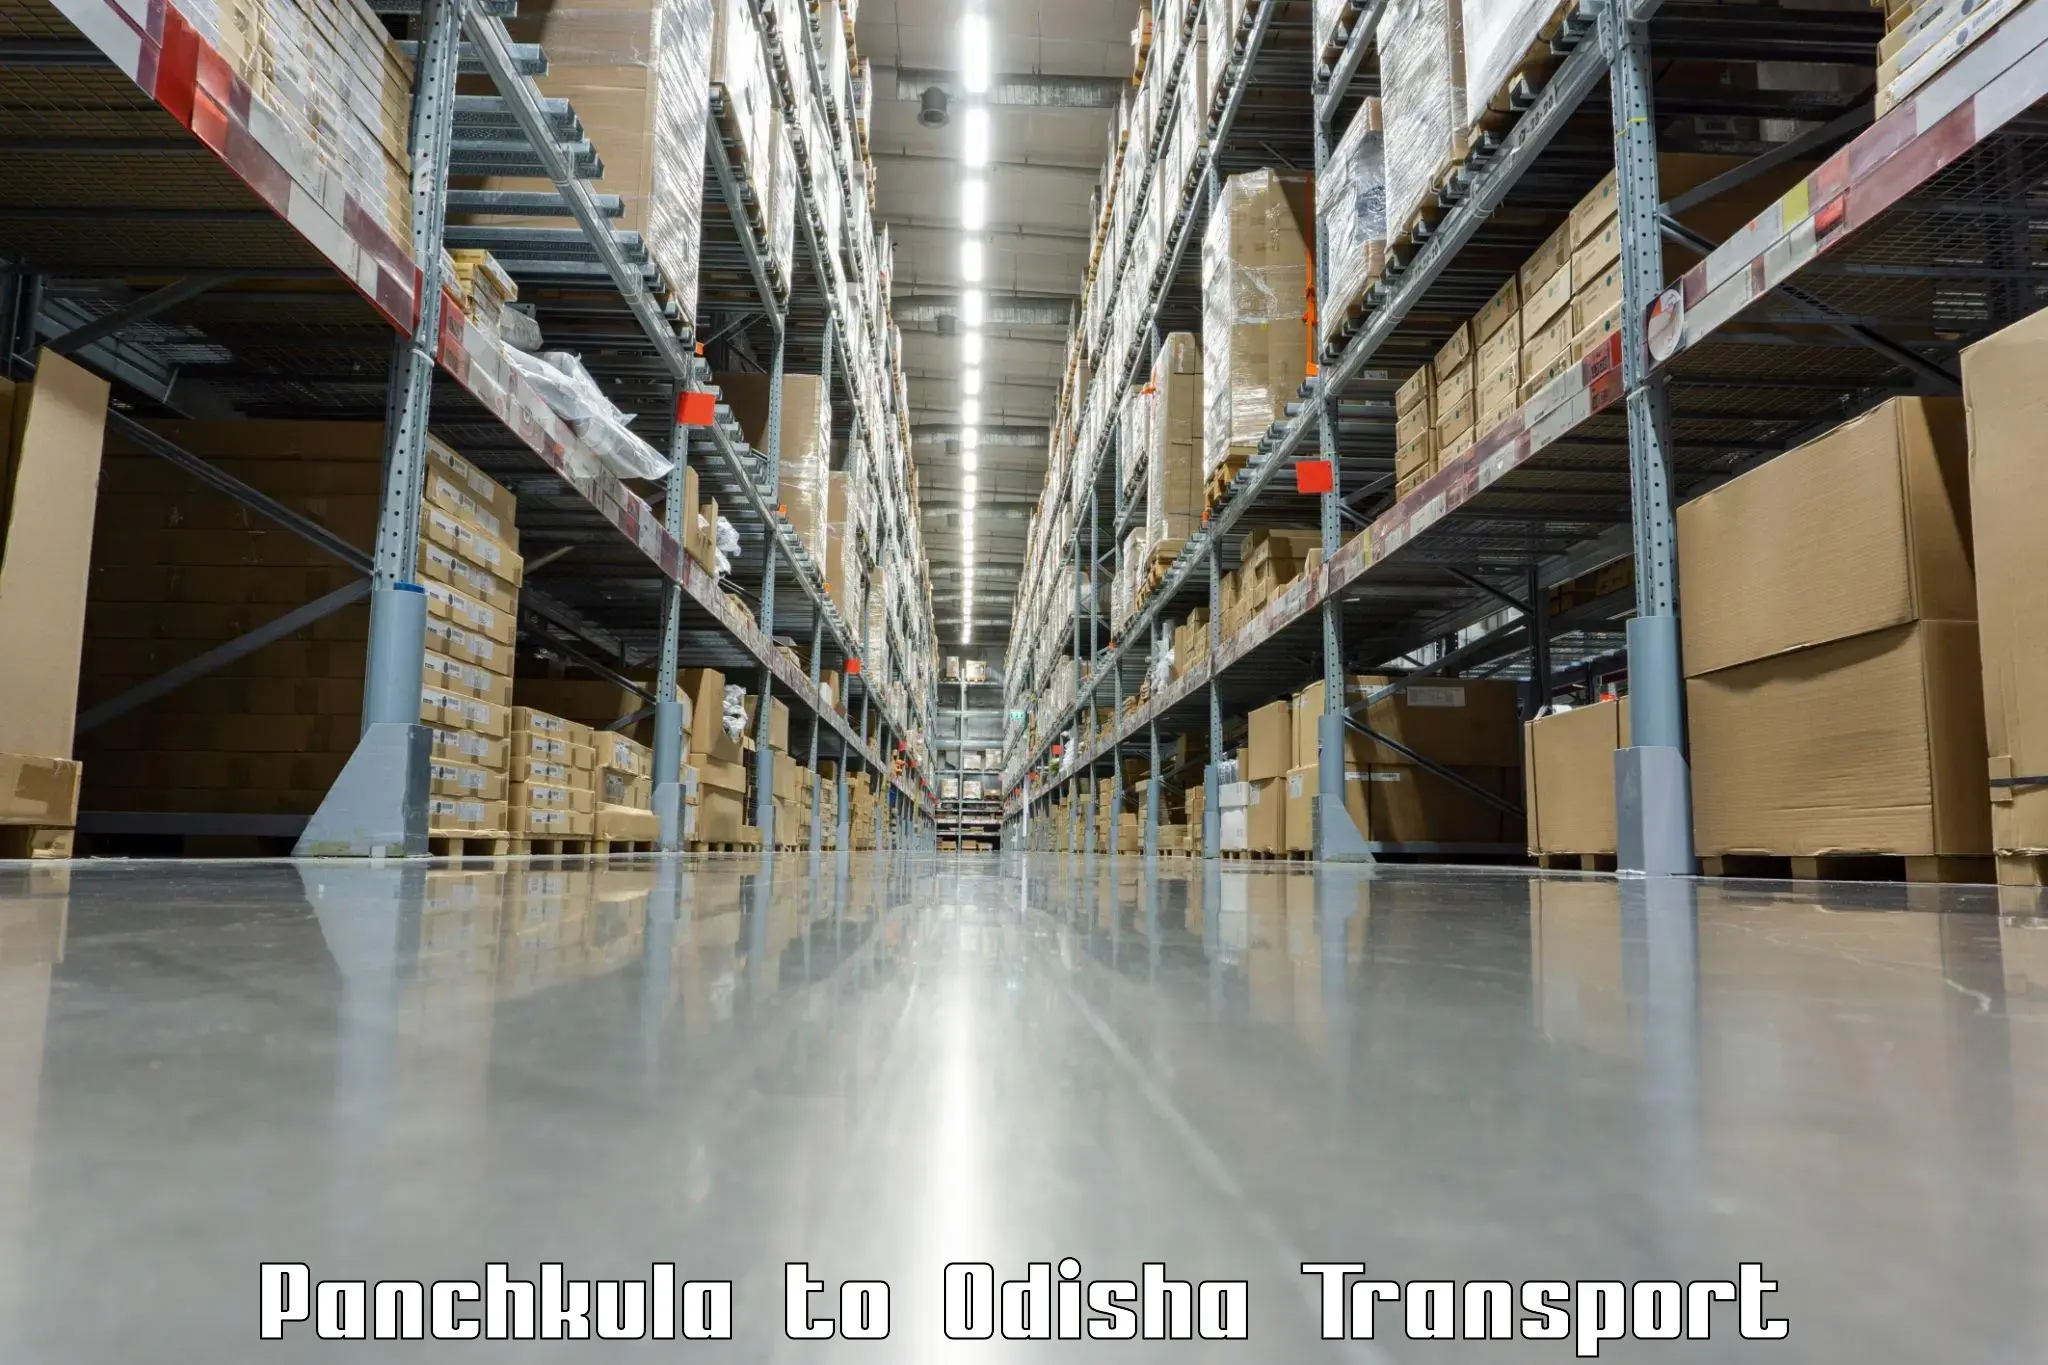 Shipping partner Panchkula to Tikiri